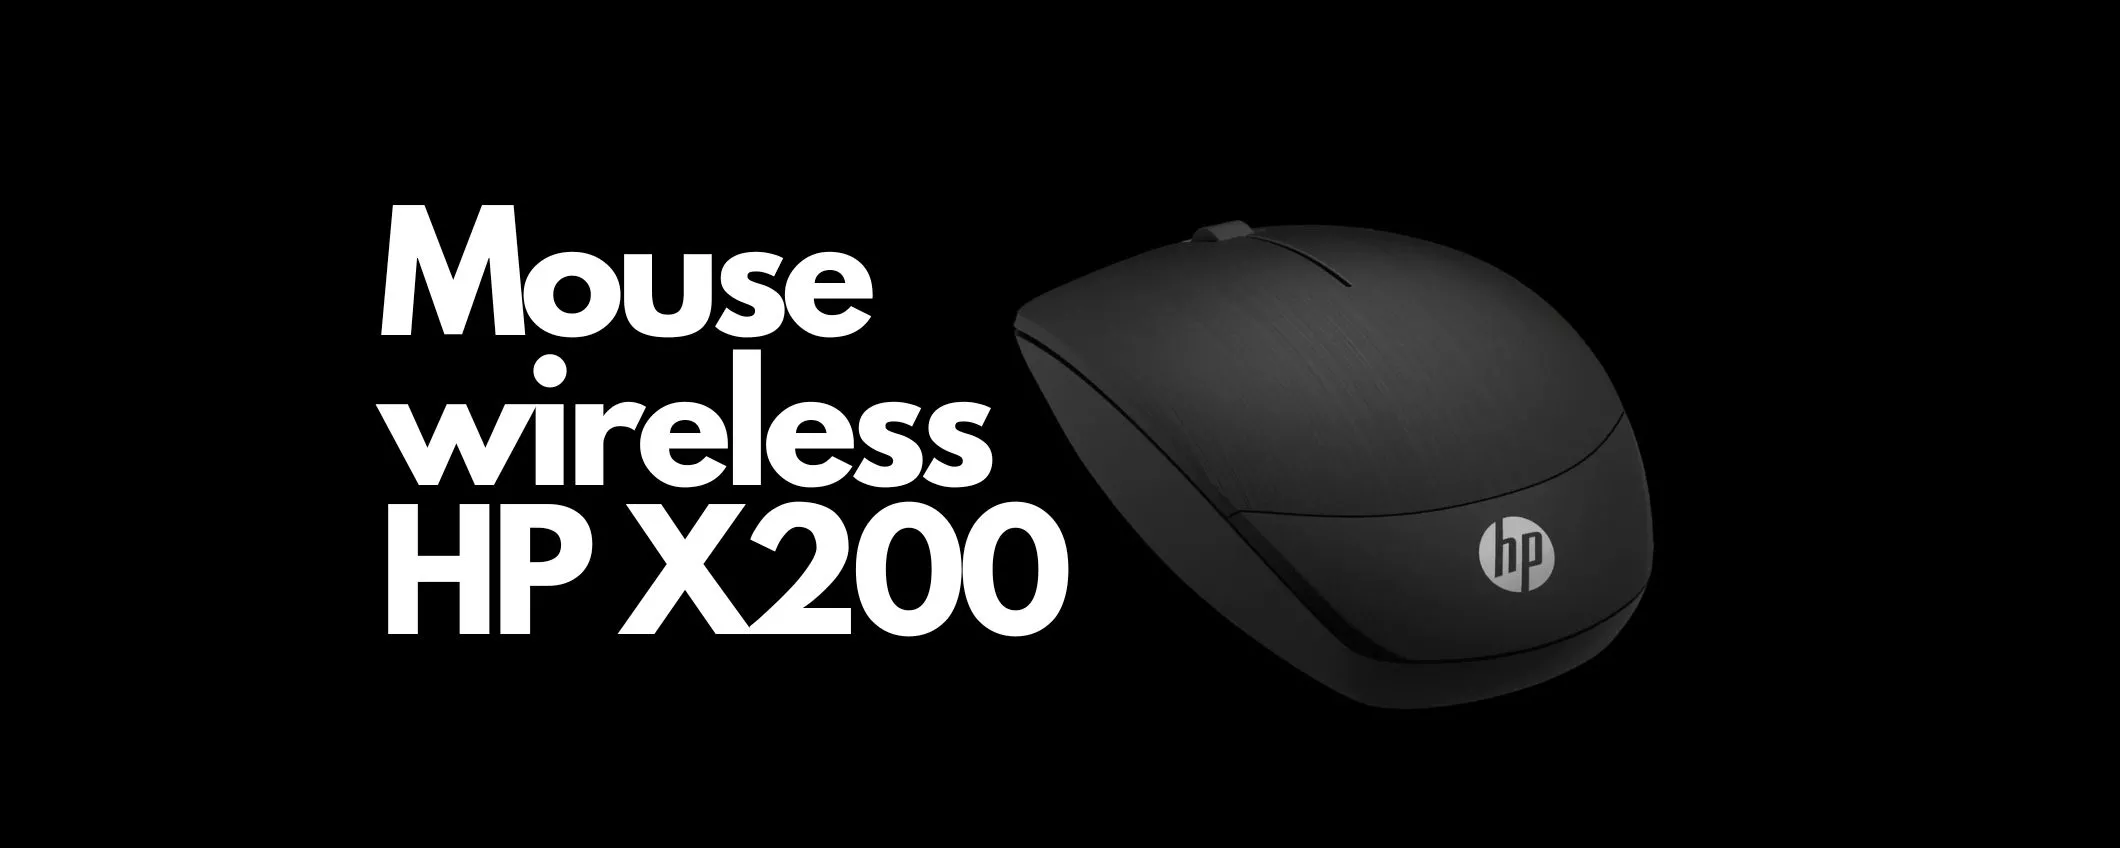 Mouse wireless HP X200 un AFFARE imperdibile su Amazon a soli 9€